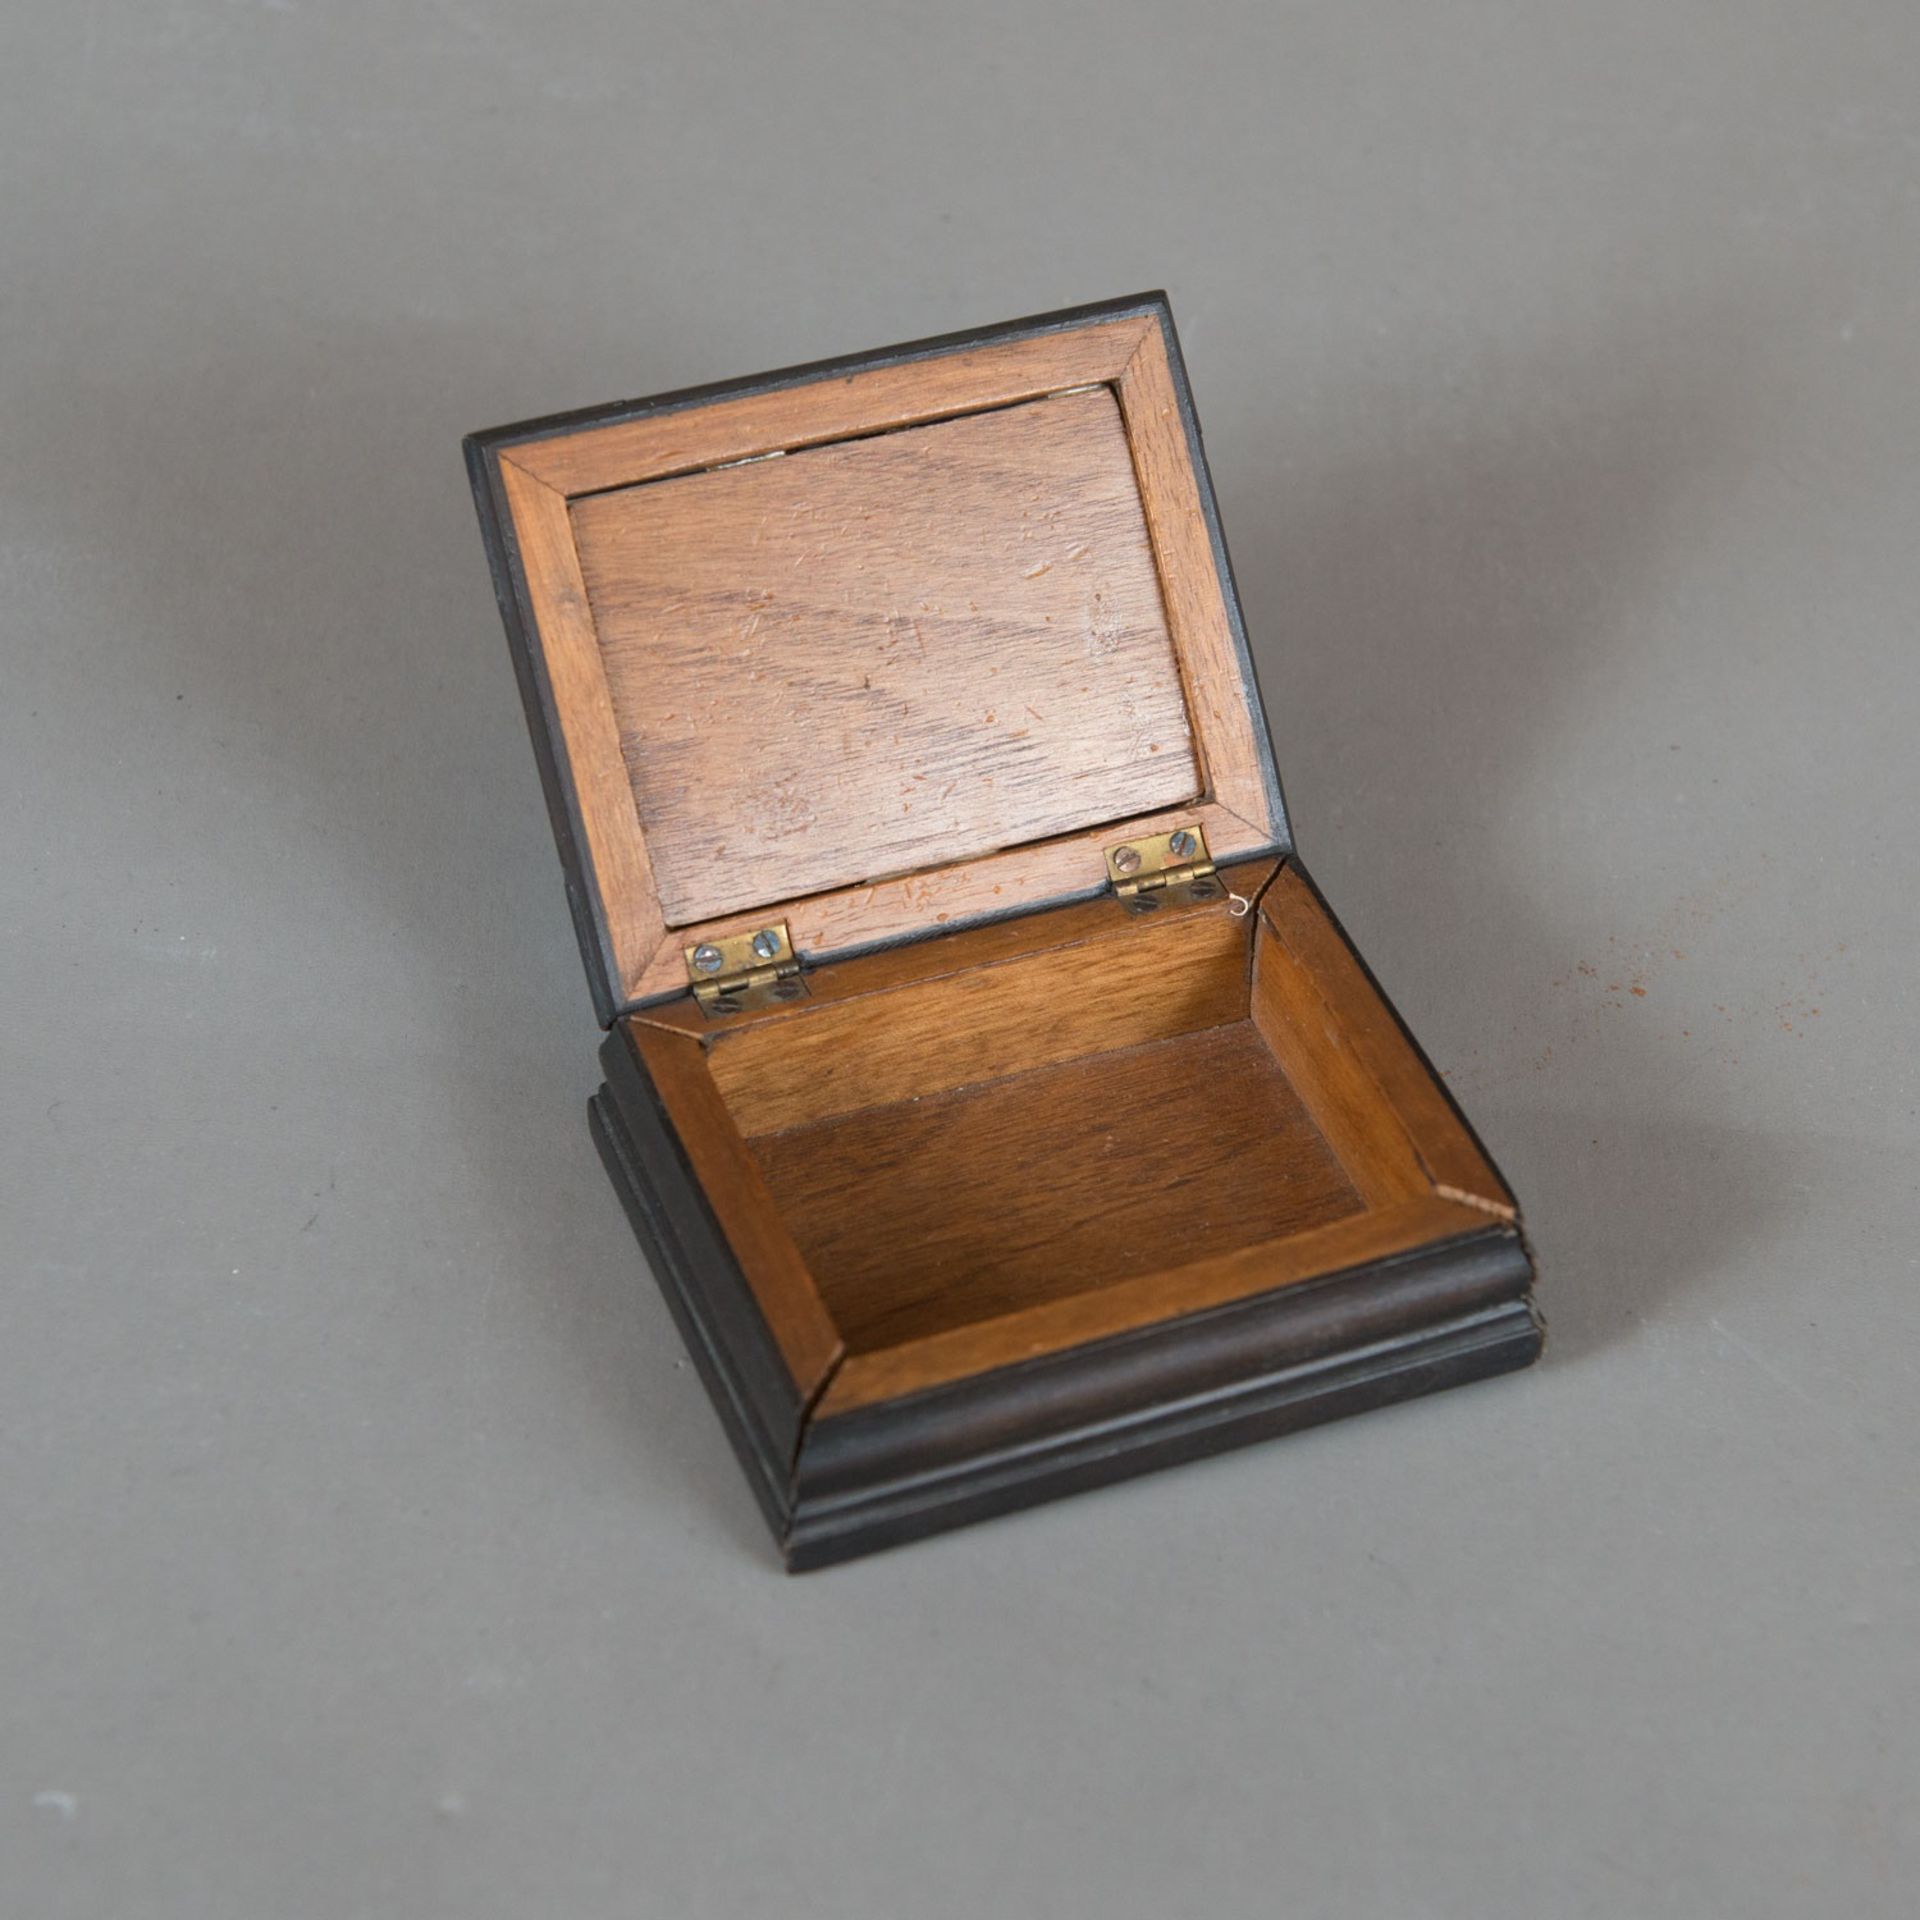 Pietra Dura Box - Image 3 of 3